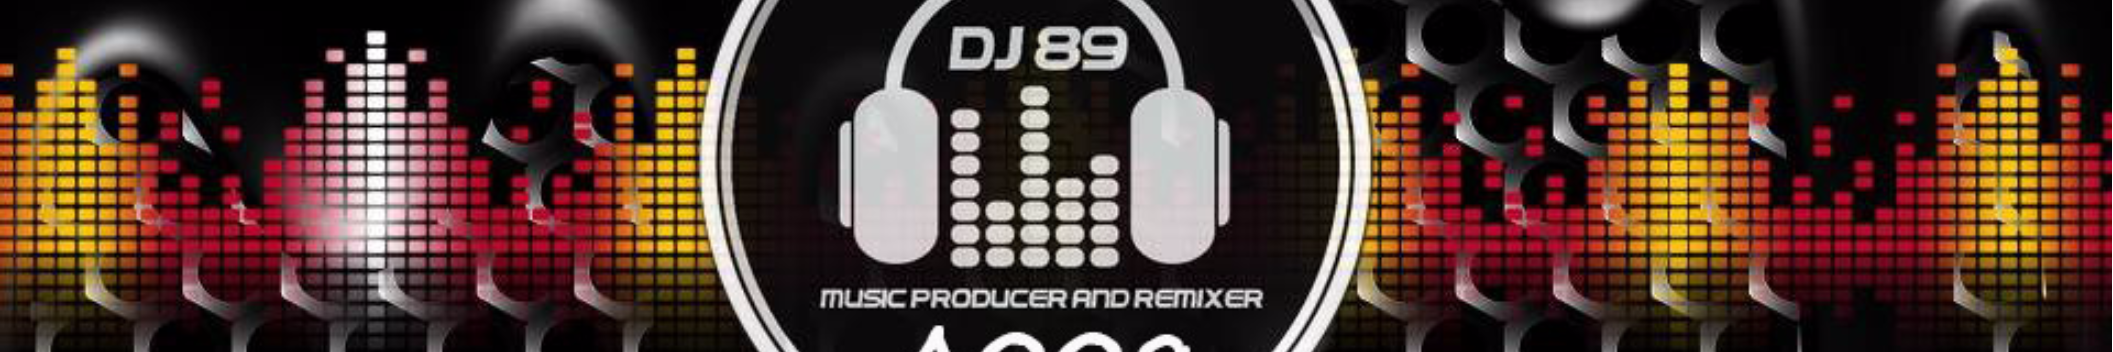 DJ 89